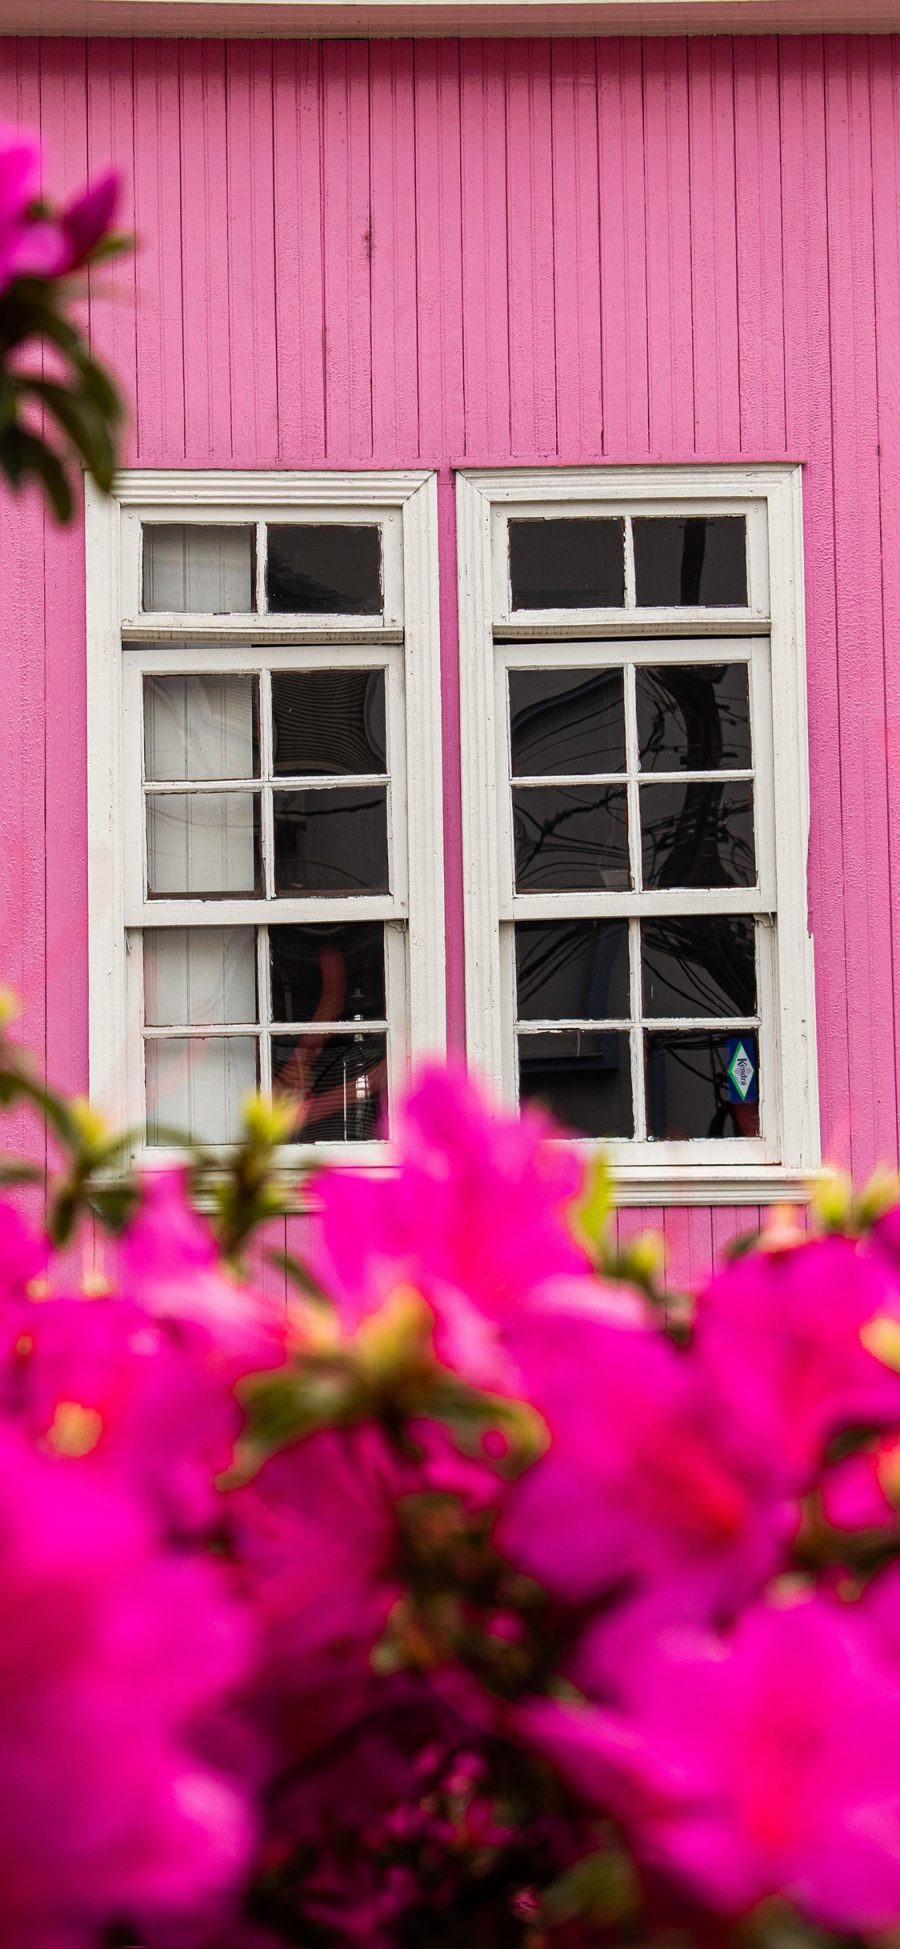 [2436×1125]房屋 窗户 鲜花 粉色系 苹果手机壁纸图片